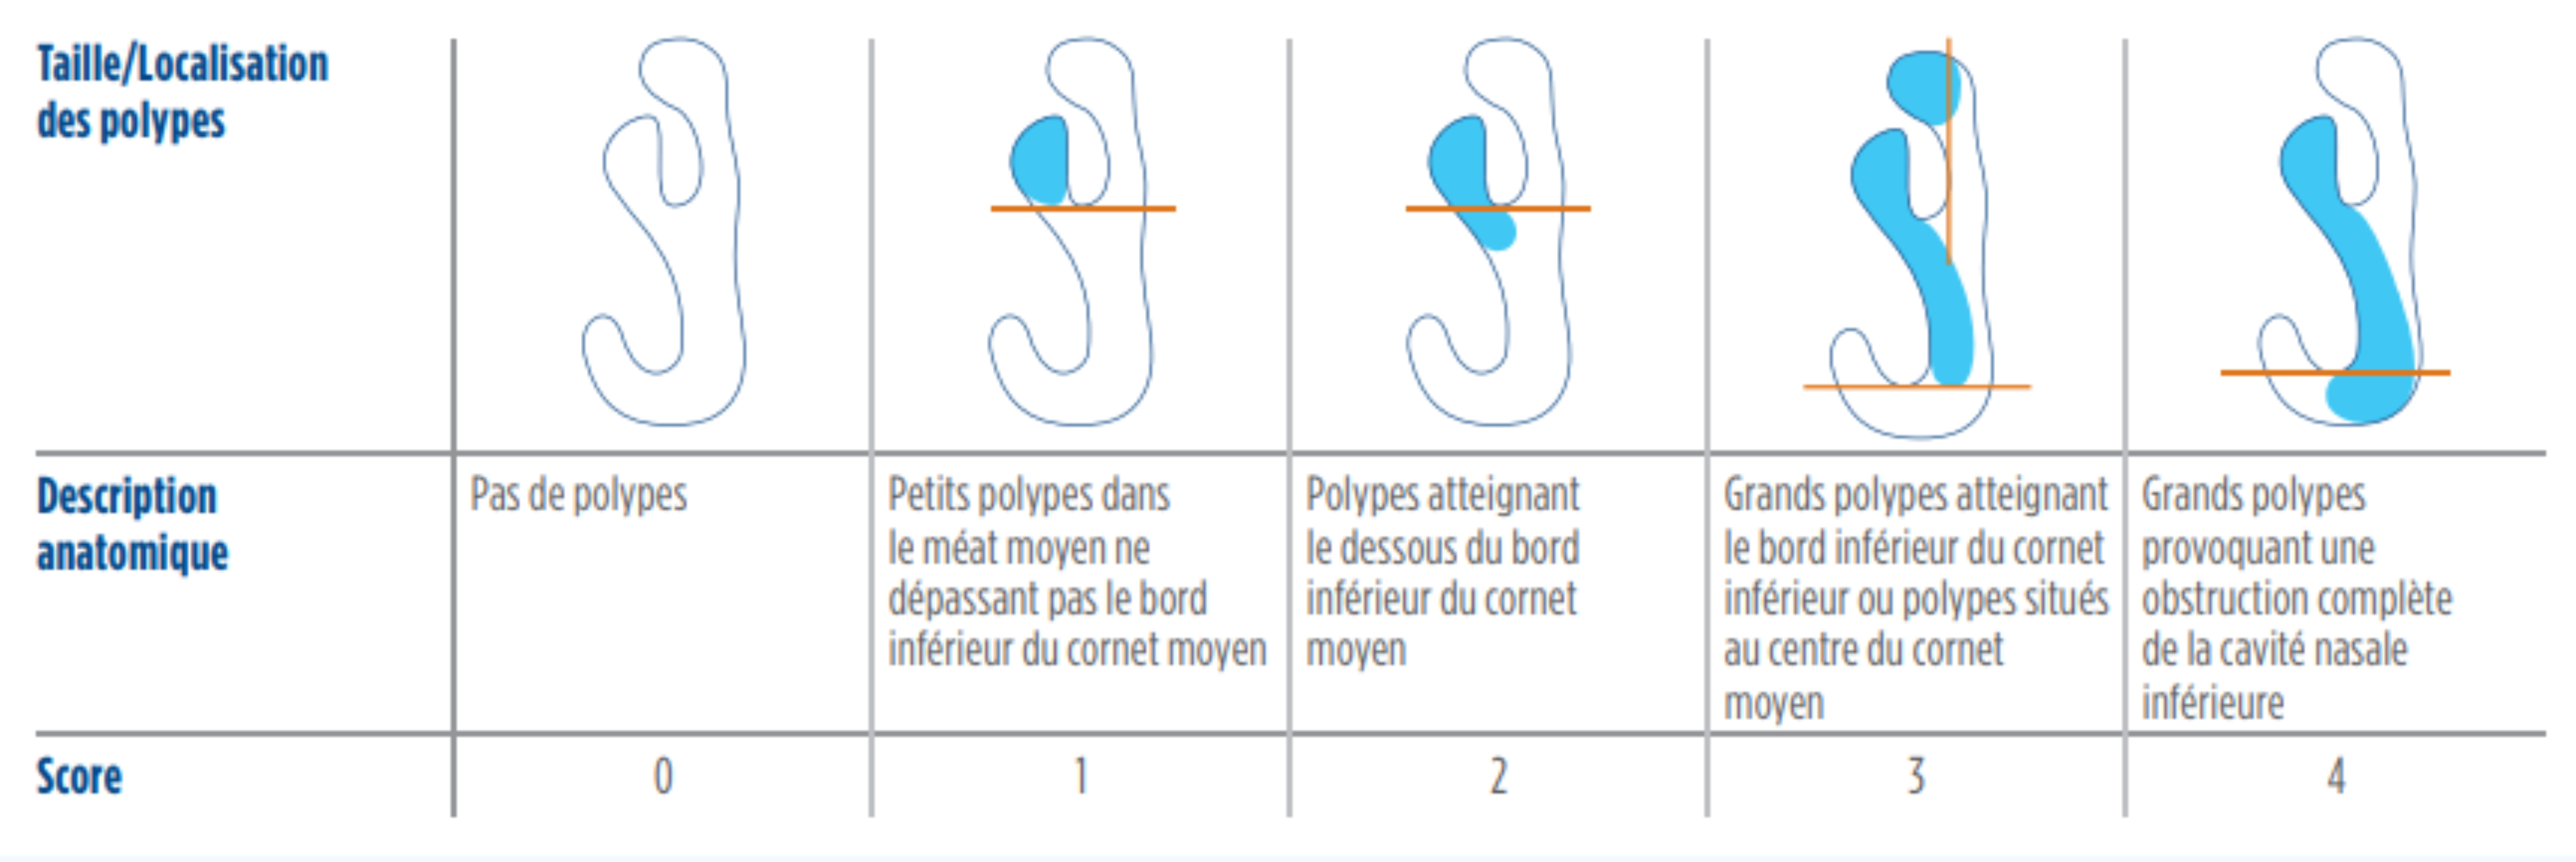 Tableau et descriptions des types de polypes avec scores